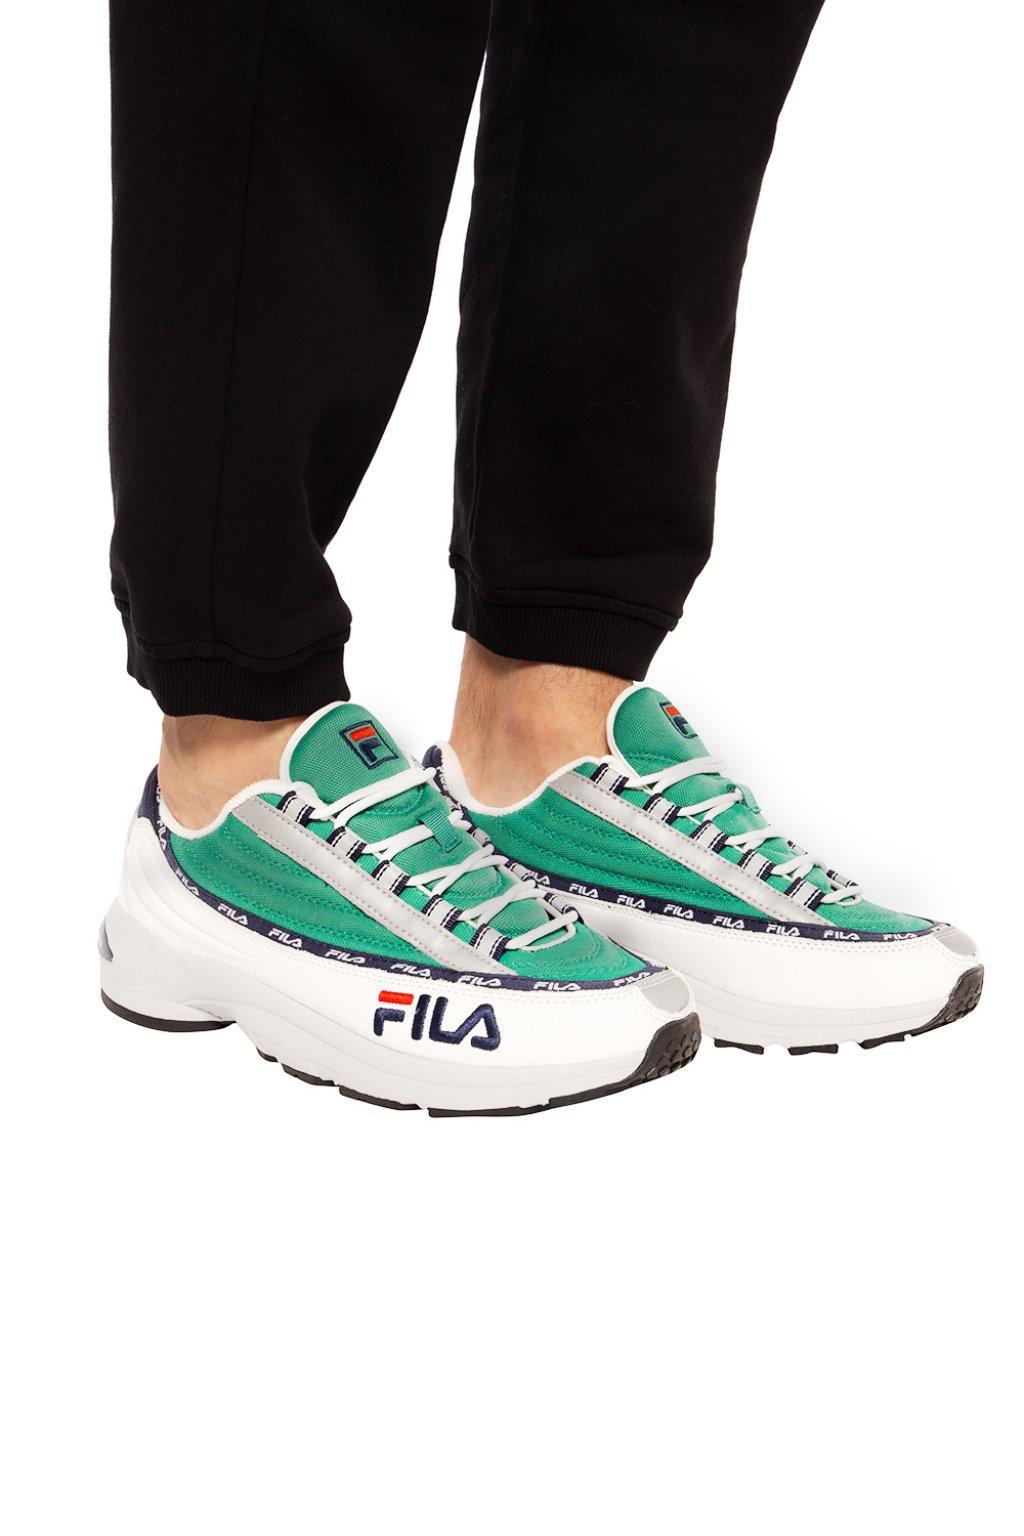 Fila Leather 'dstr97' Sneakers in Green for Men - Lyst